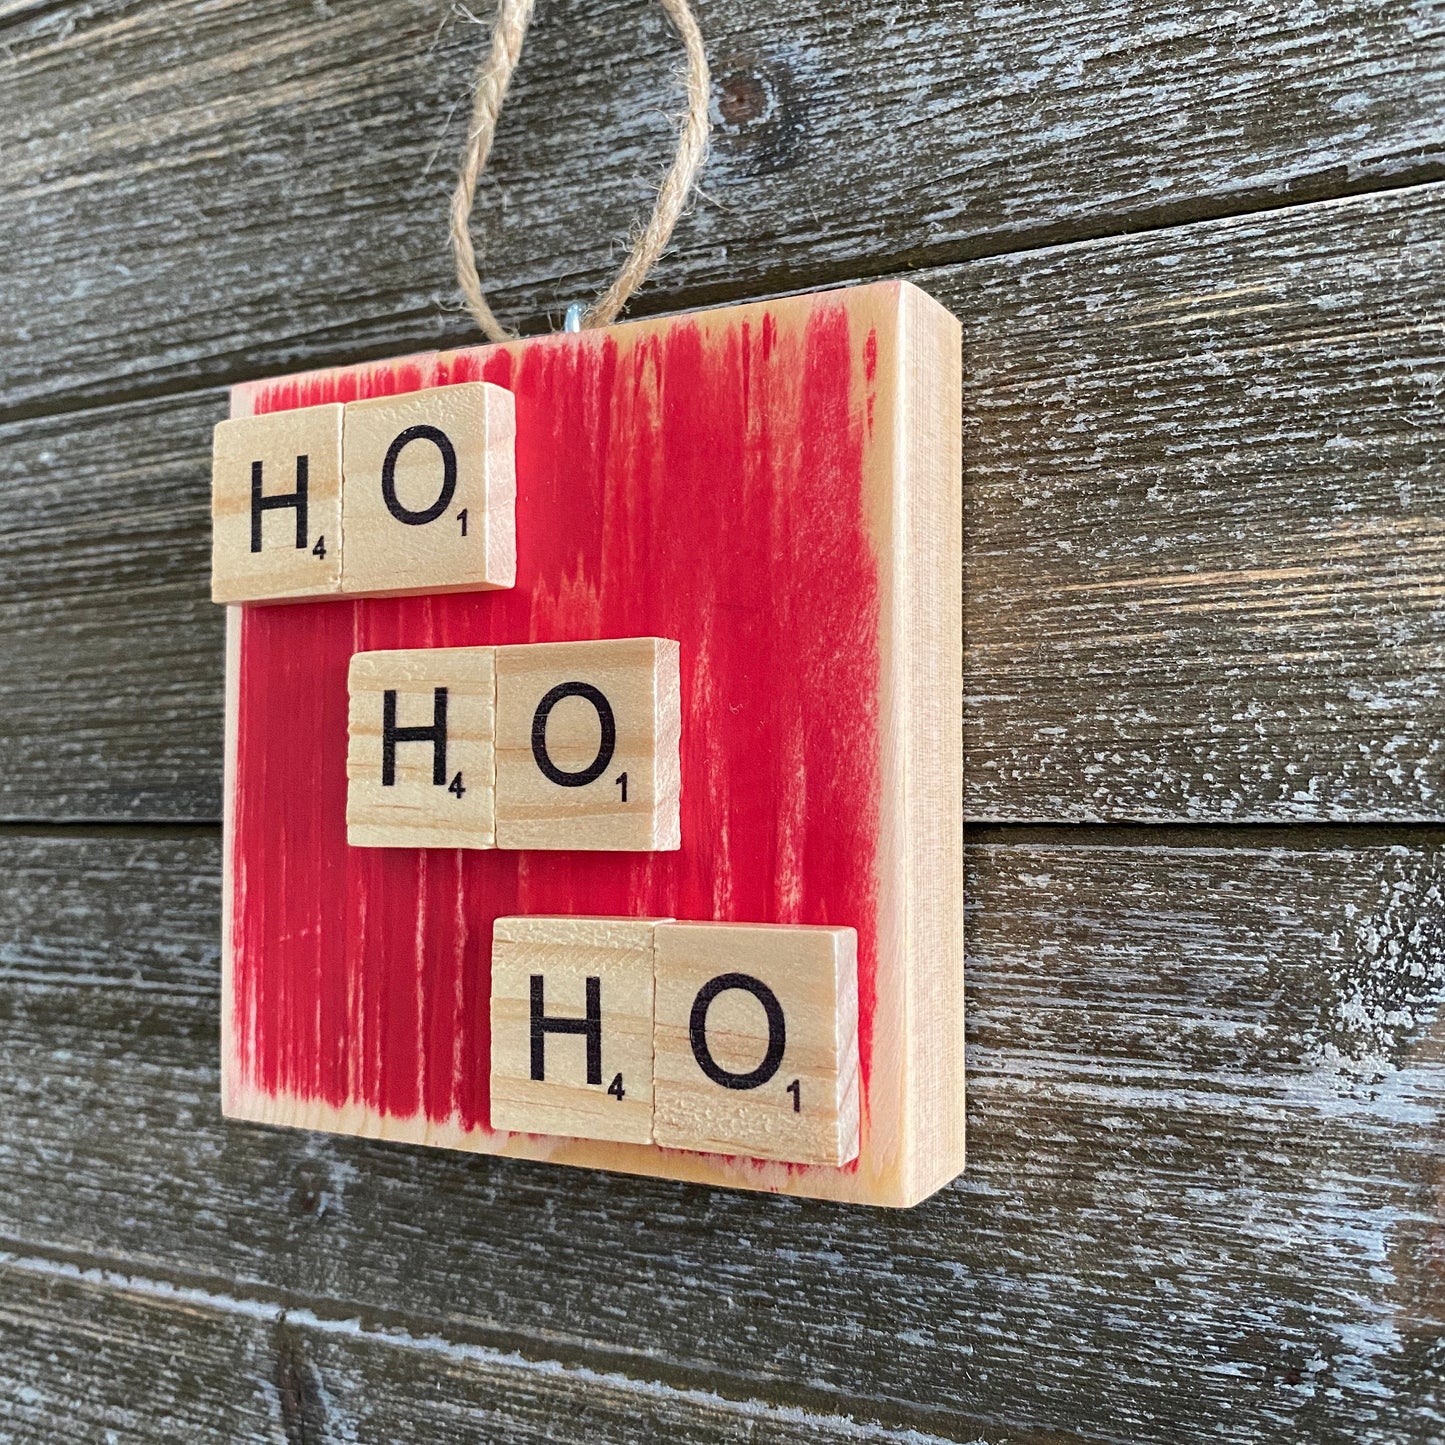 Christmas Ornament - HO HO HO